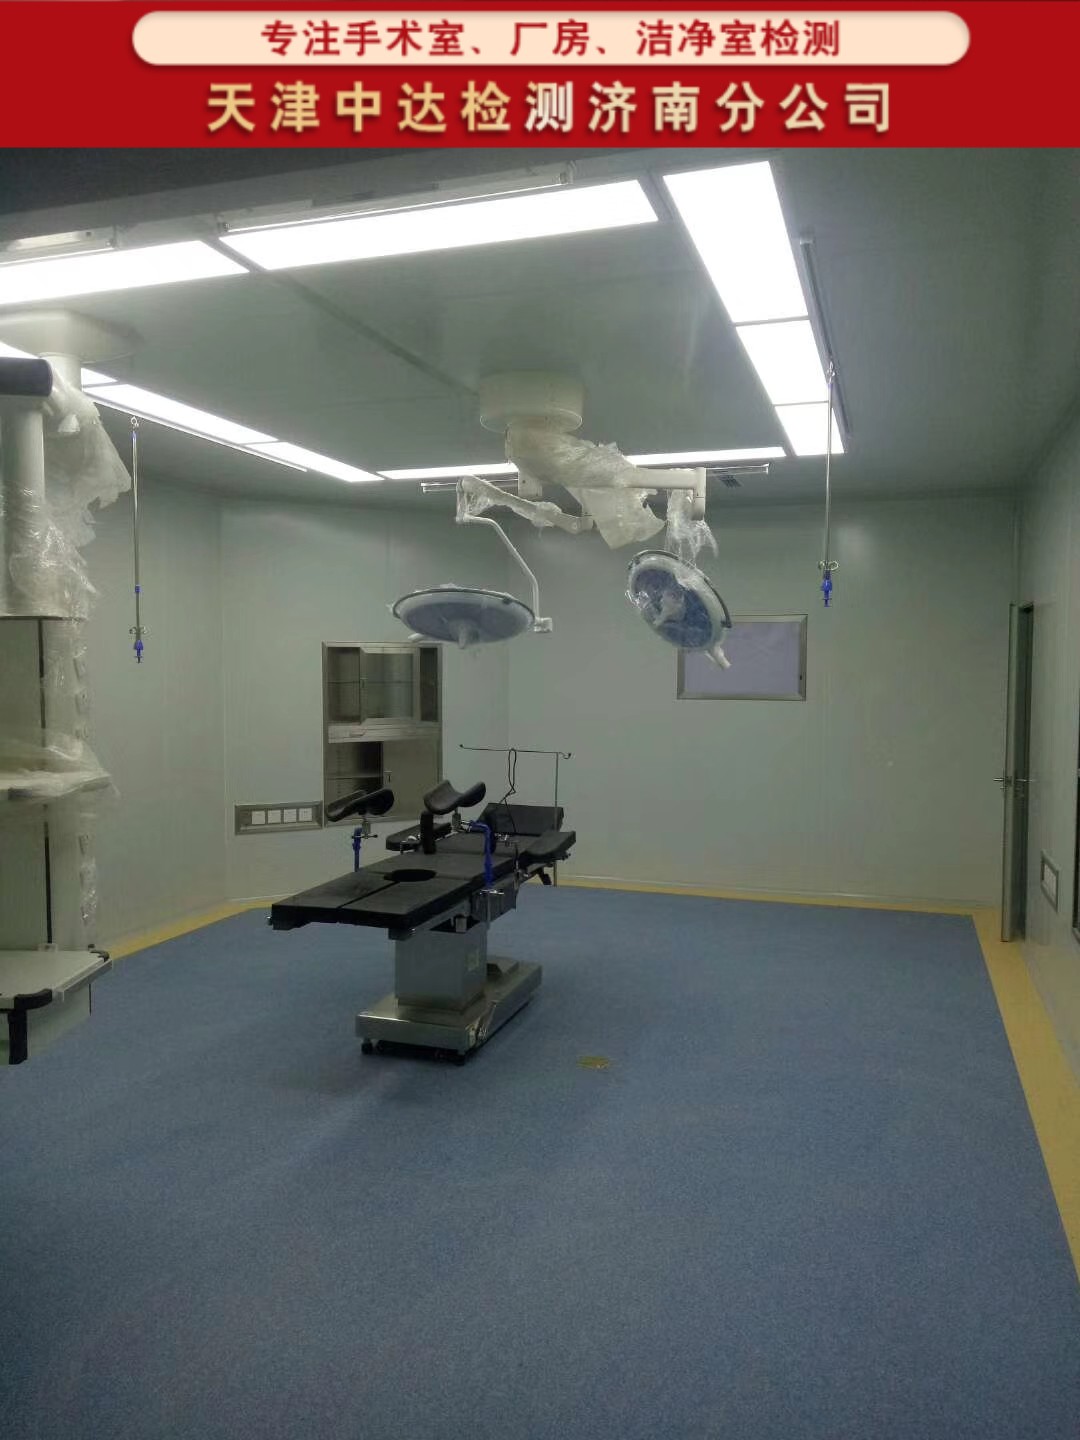 青岛即墨区医院手术室洁净工程检测机构-天津中达检测济南分公司